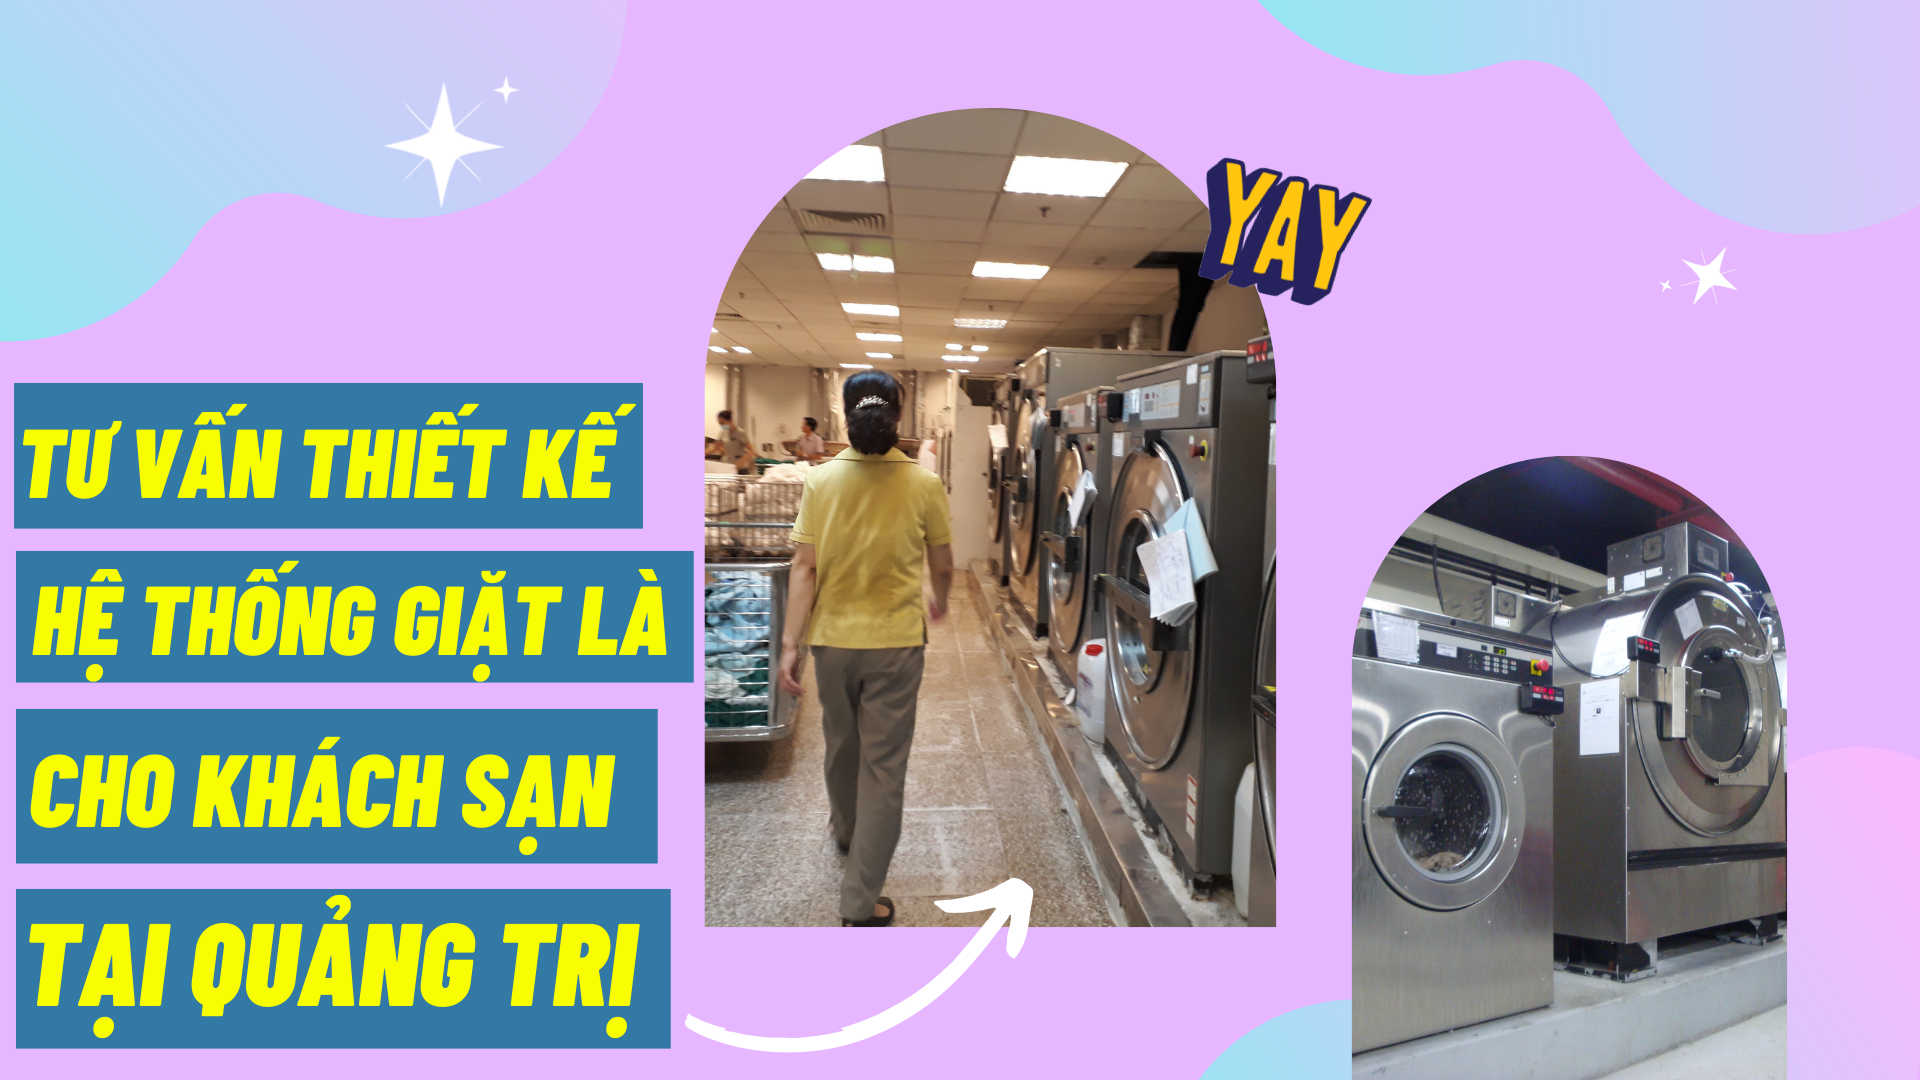 Tư vấn thiết kế hệ thống giặt là cho khách sạn tại Quảng Trị 